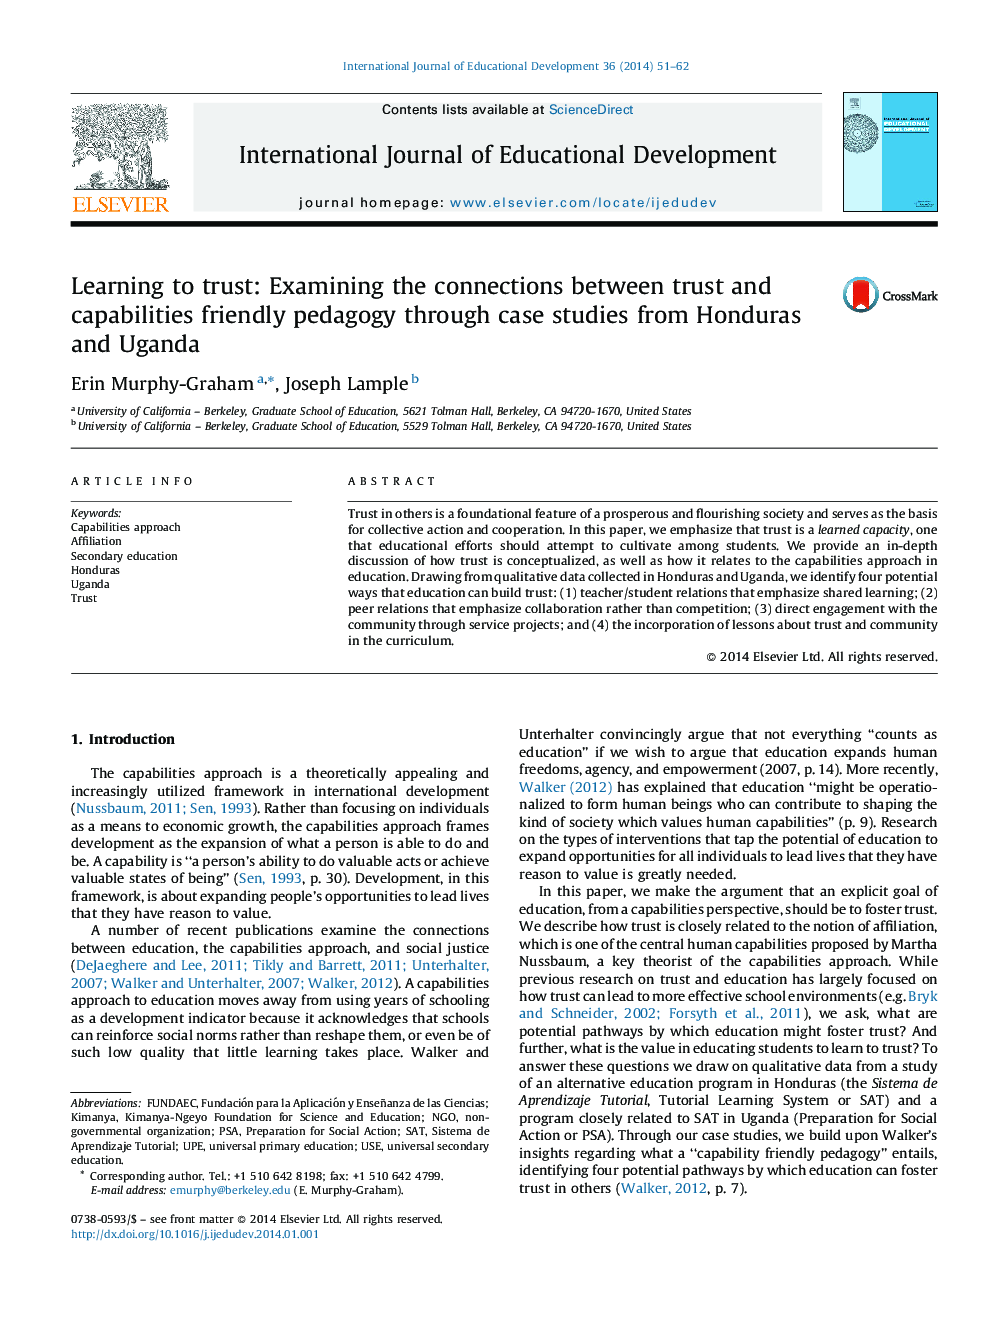 یادگیری به اعتماد کردن: بررسی ارتباط بین اعتماد و قابلیت تعلیم و تربیت دوستانه از طریق مطالعات موردی از هندوراس و اوگاندا